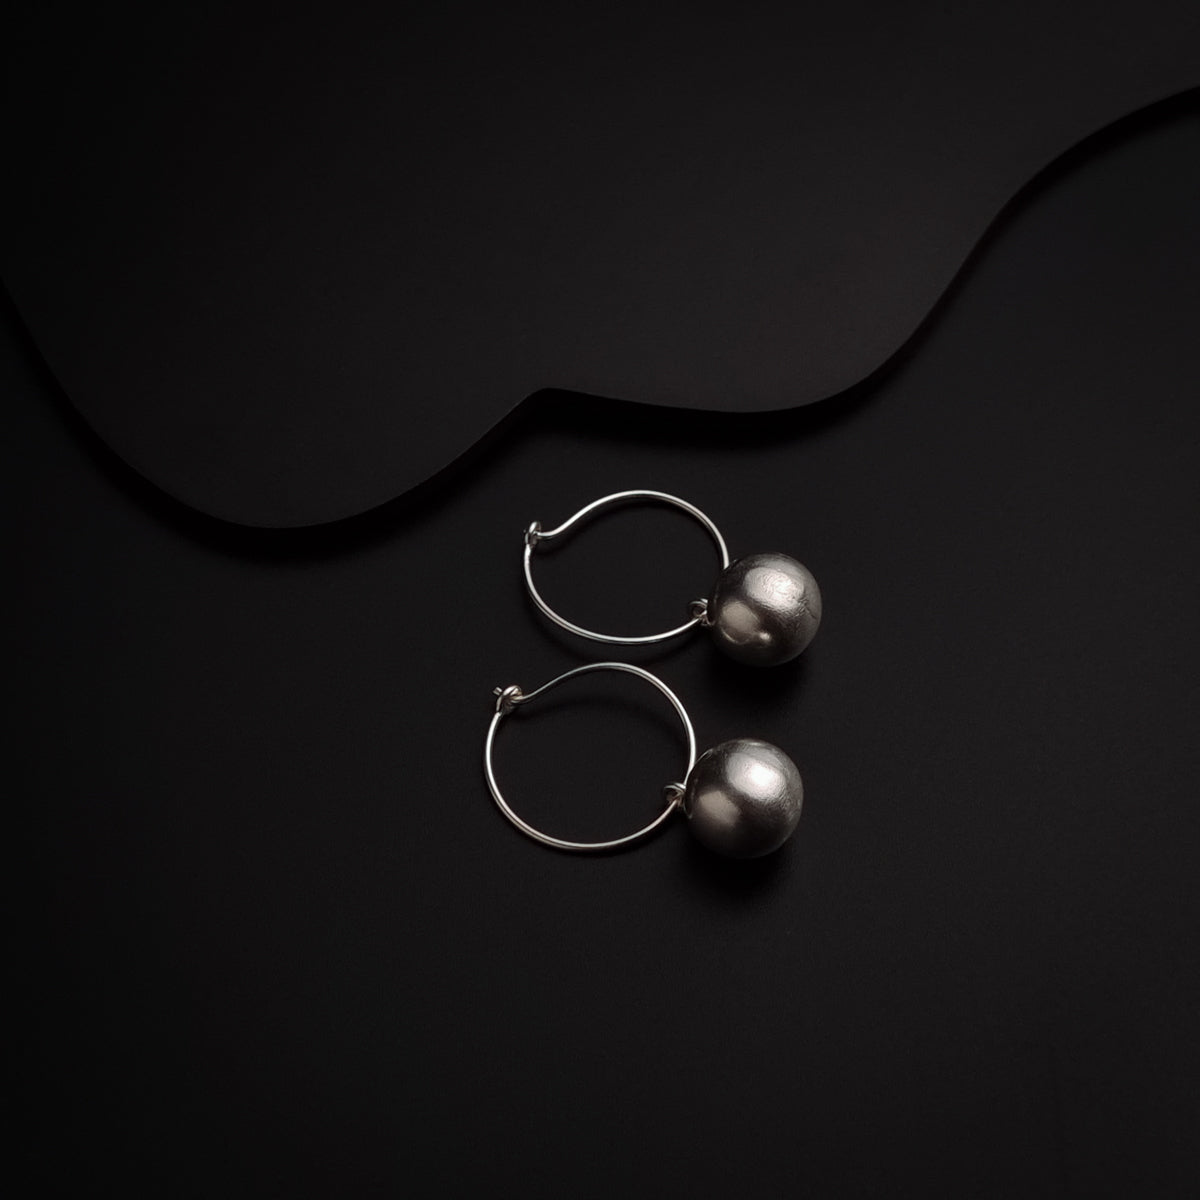 a pair of hoop earrings on a black background